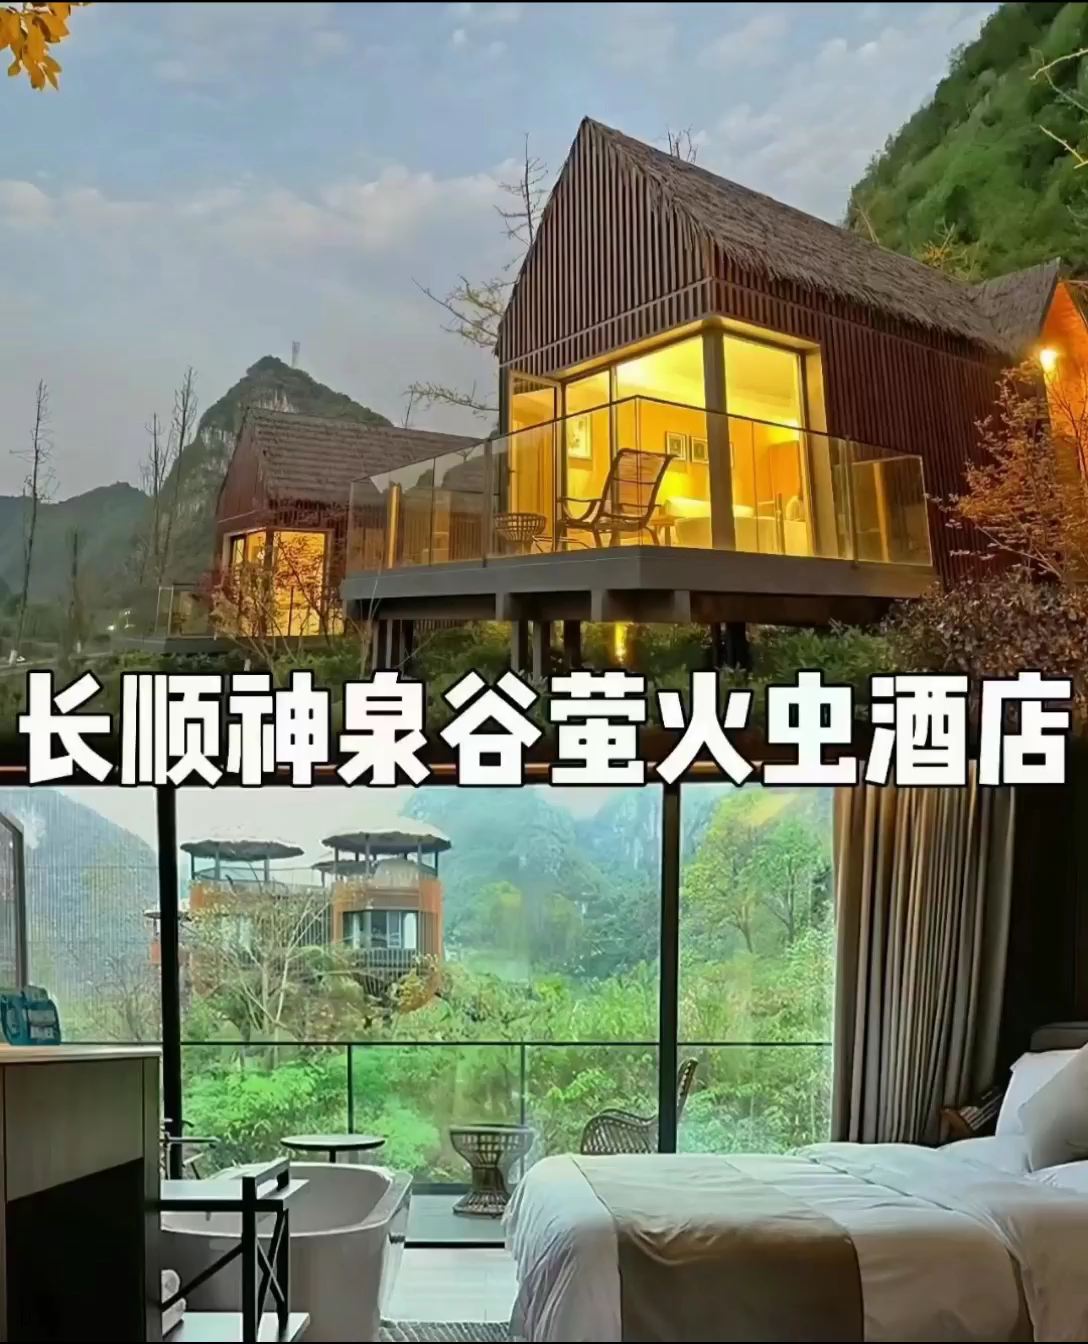 贵州长顺神泉谷: 酒店由国内知名设计团队打造 ,将传统中式元素、现 代艺术以及喀斯特山水风光相融合化